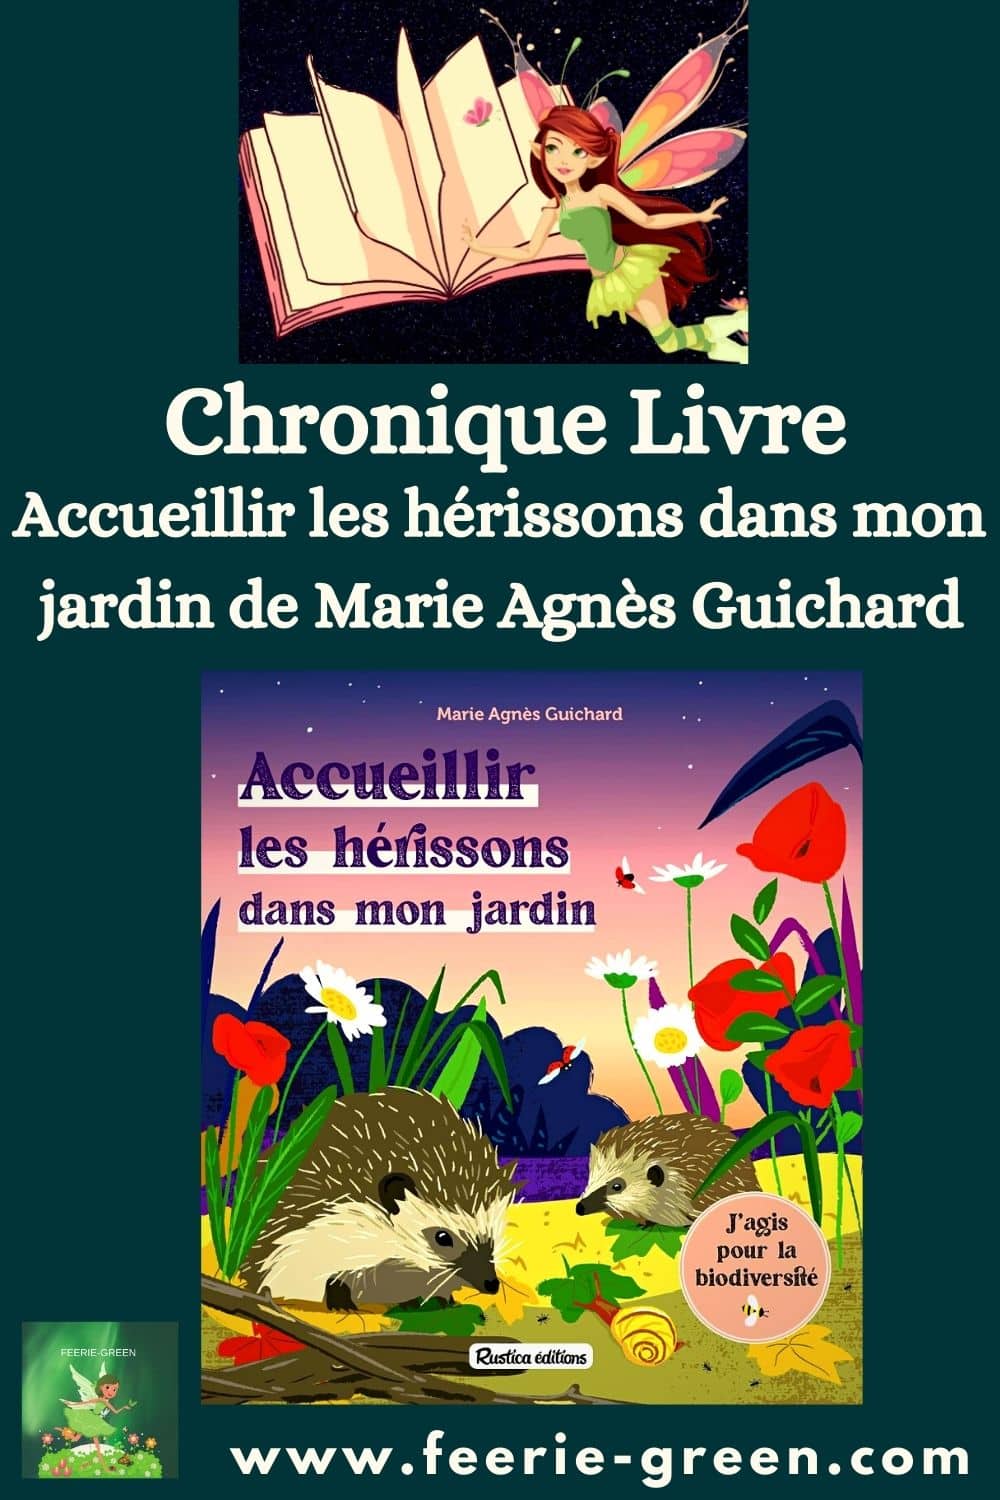  Accueillir les hérissons dans mon jardin de Marie Agnès Guichard - pinterest